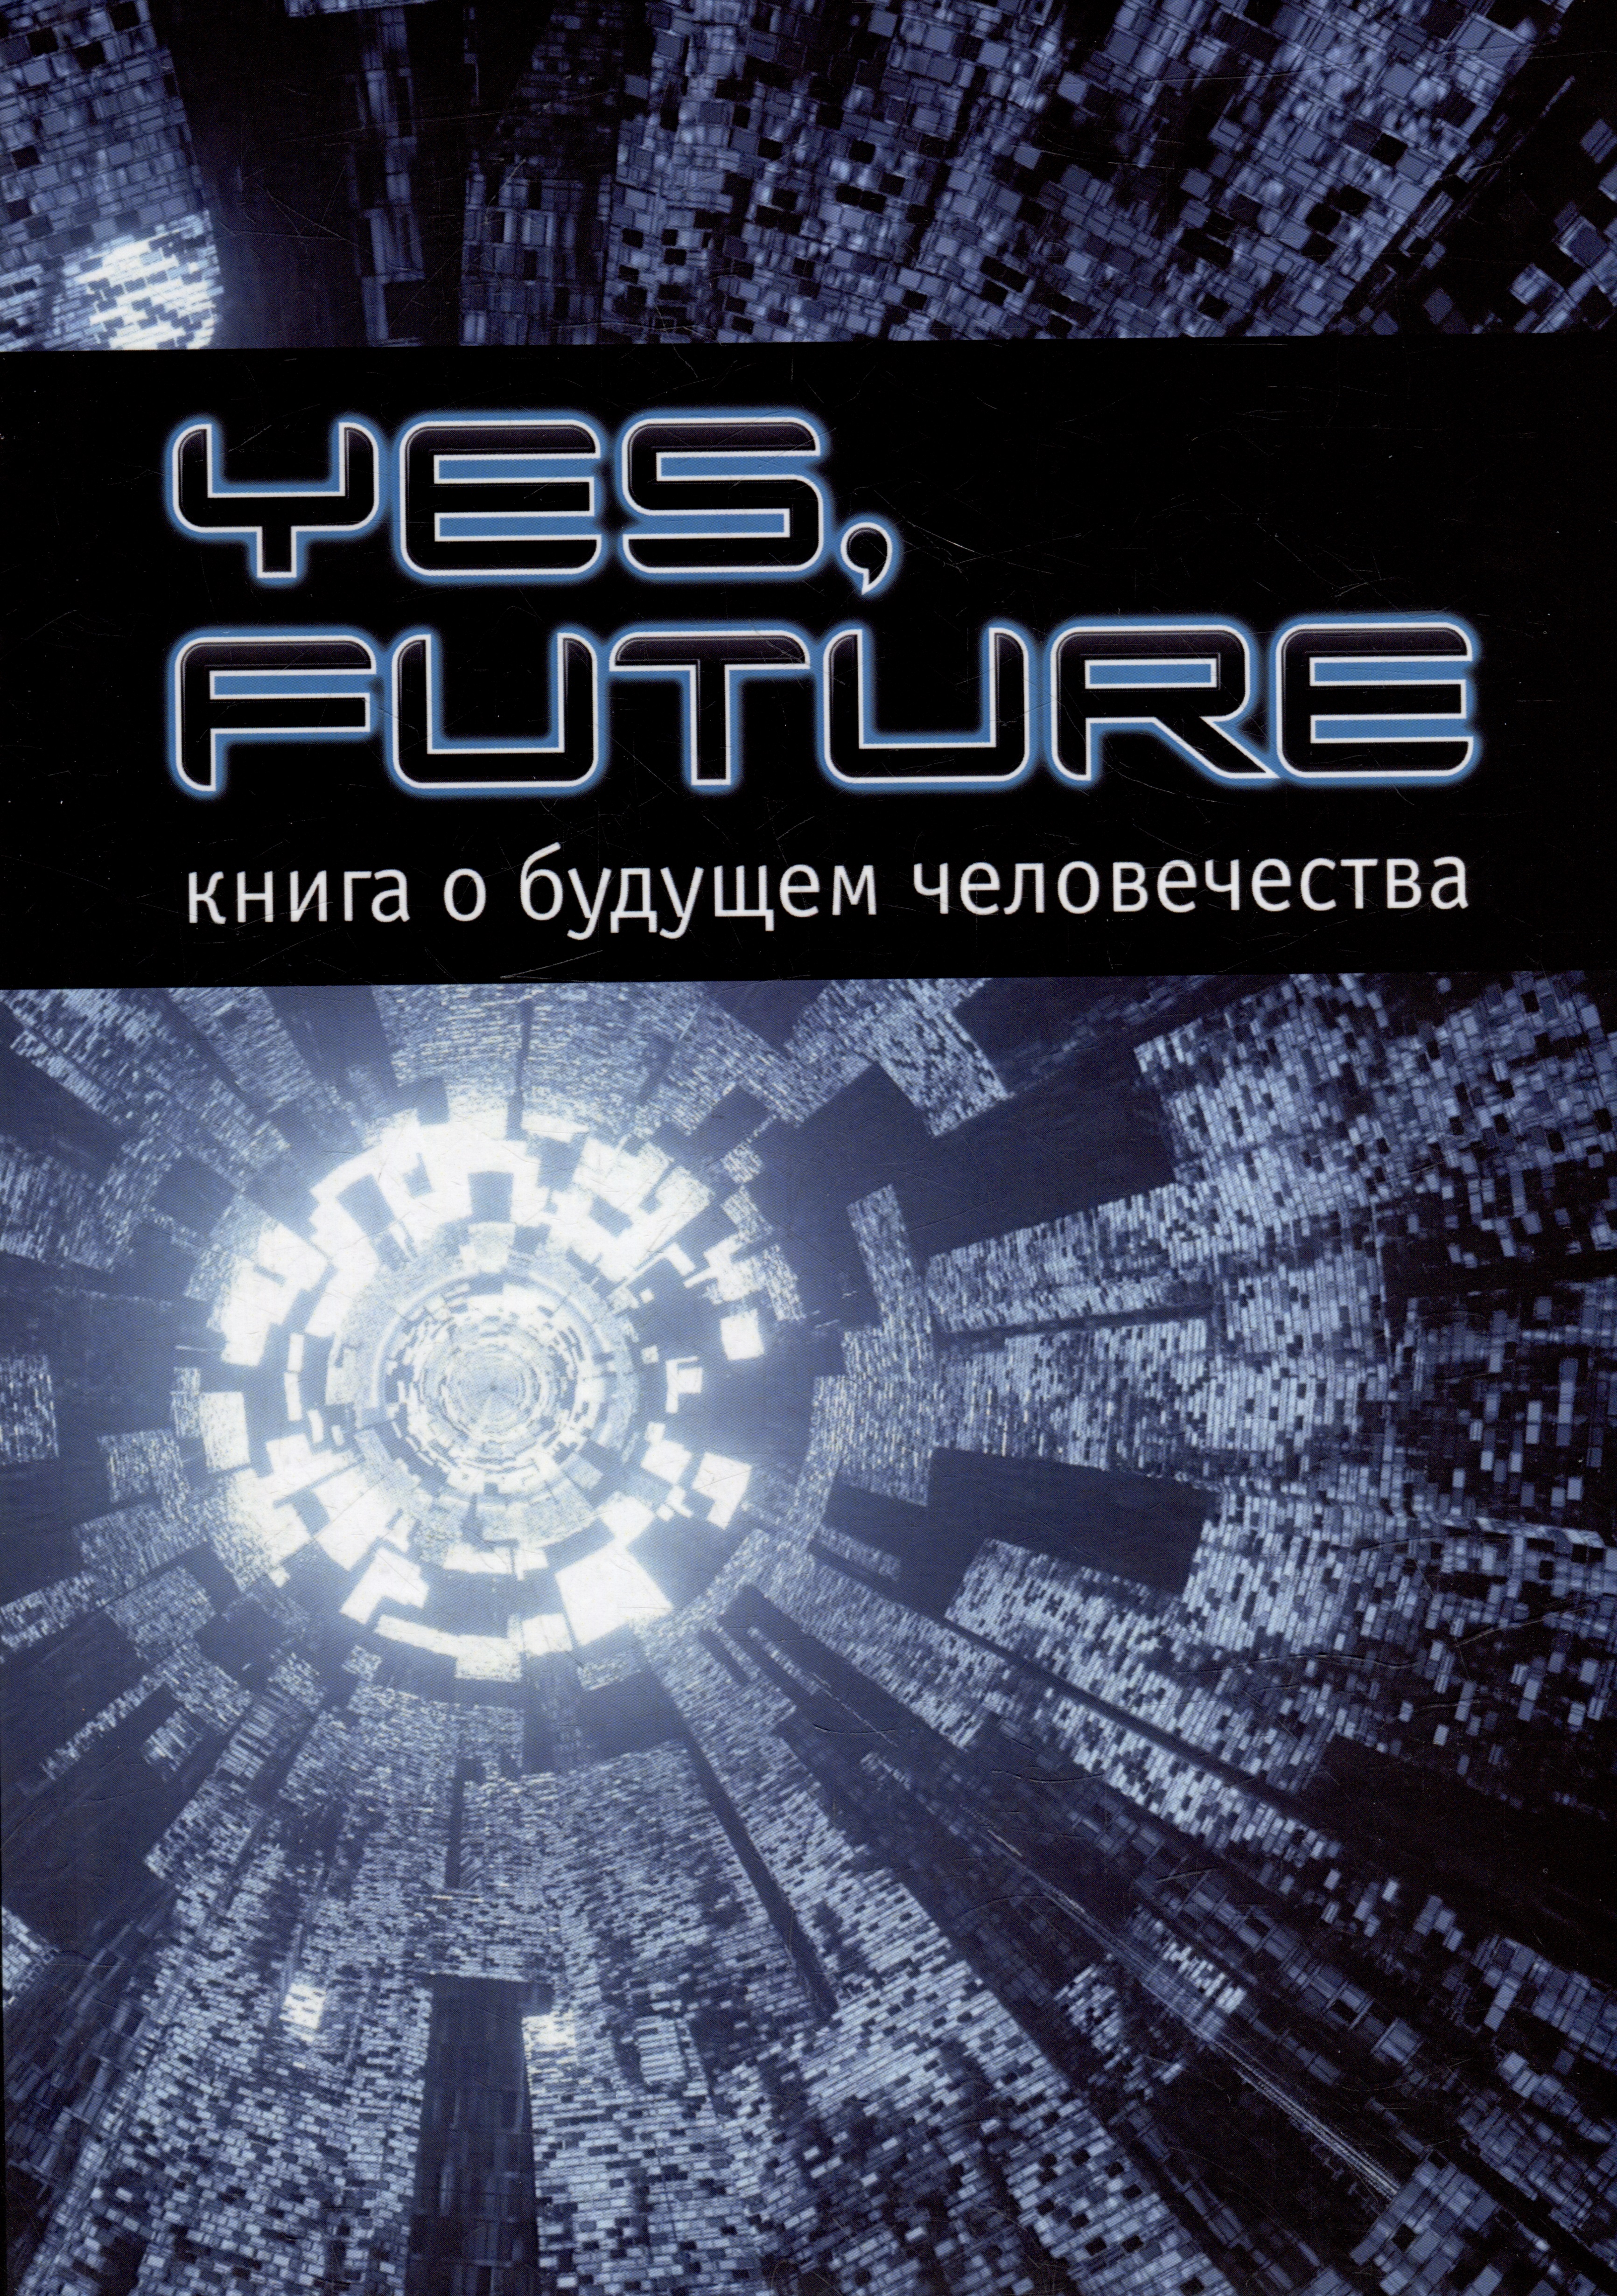 ницше фридрих вильгельм великие афоризмы изречения мысли Yes, future. Книга о будущем человека